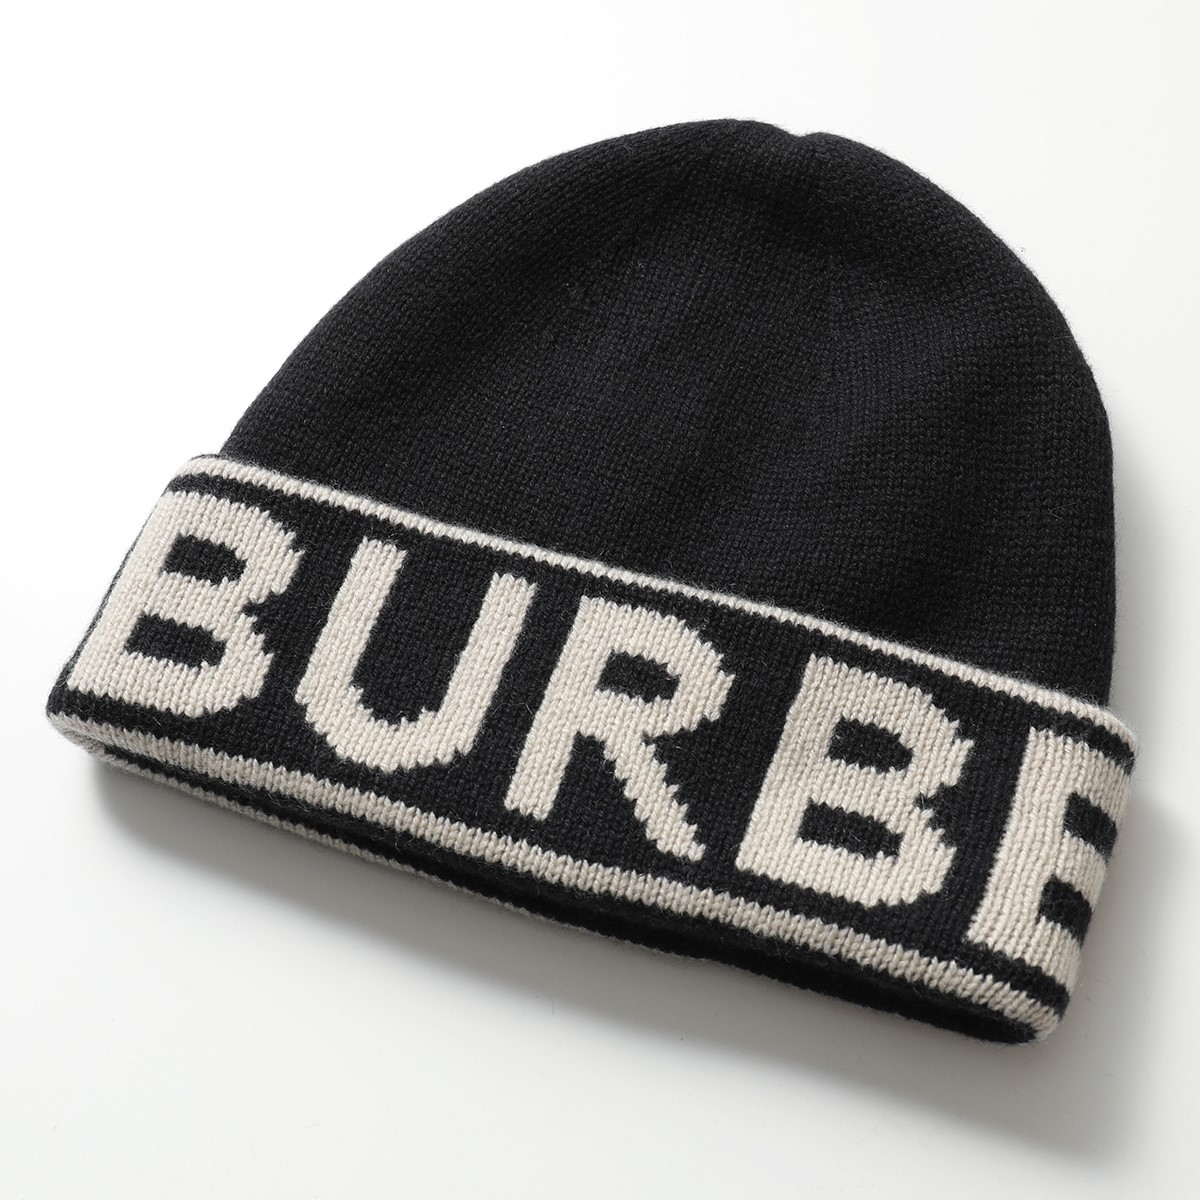 BURBERRY バーバリー ニット帽 メンズ カラー2色 8023982 8023983 カシミヤ リブ ジャガード ロゴ ニットキャップ 帽子  ビーニー | インポートセレクト musee